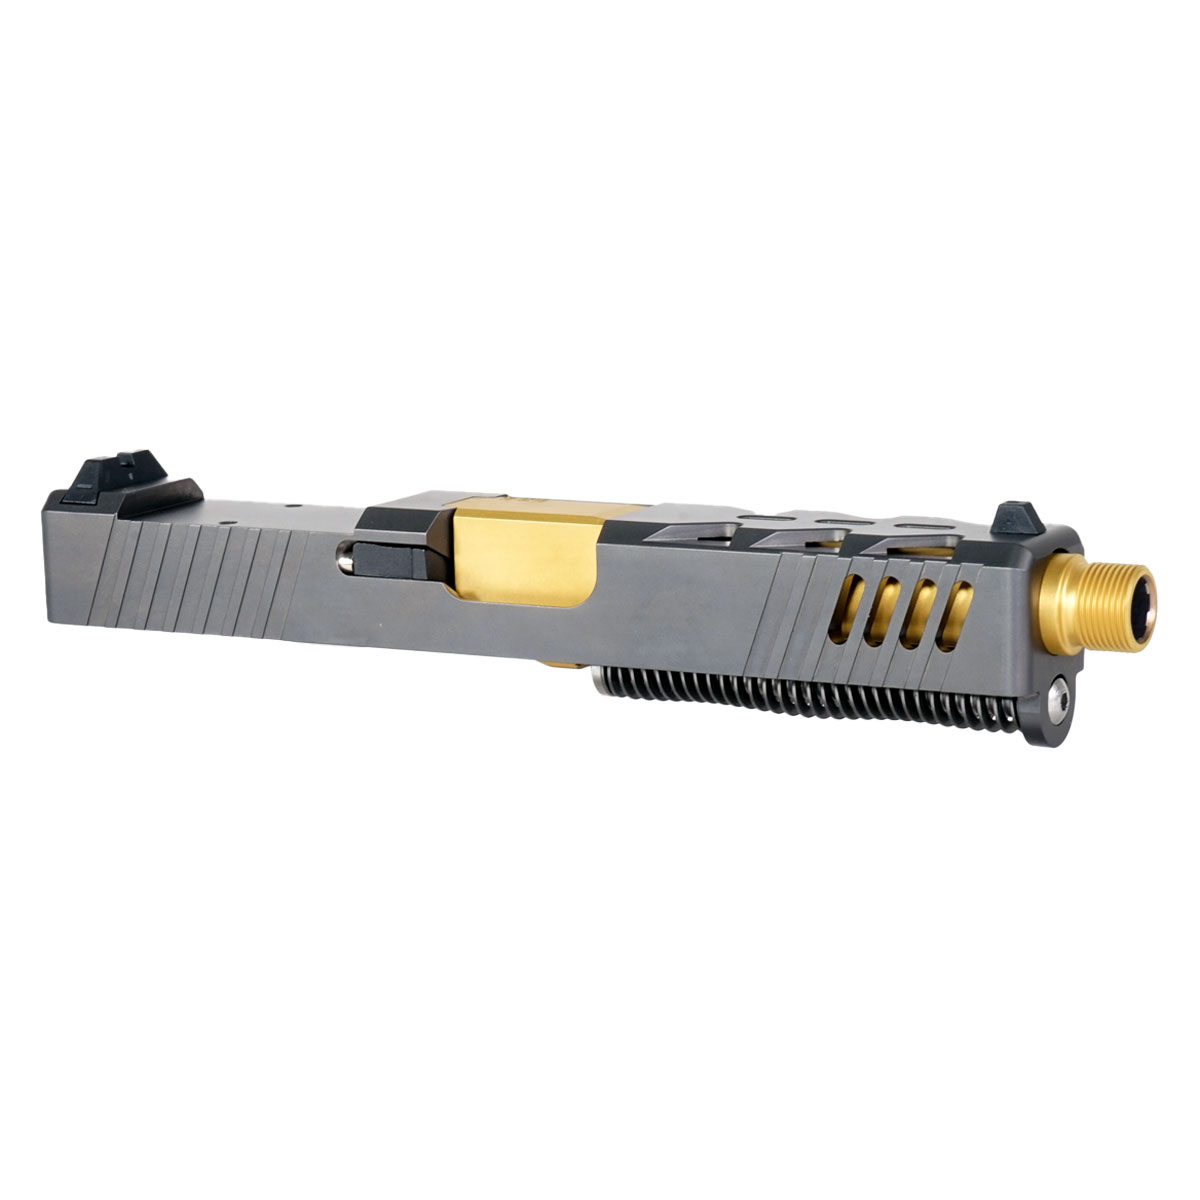 DTT 'The Rickster' 9mm Complete Slide Kit - Glock 19 Gen 1-3 Compatible